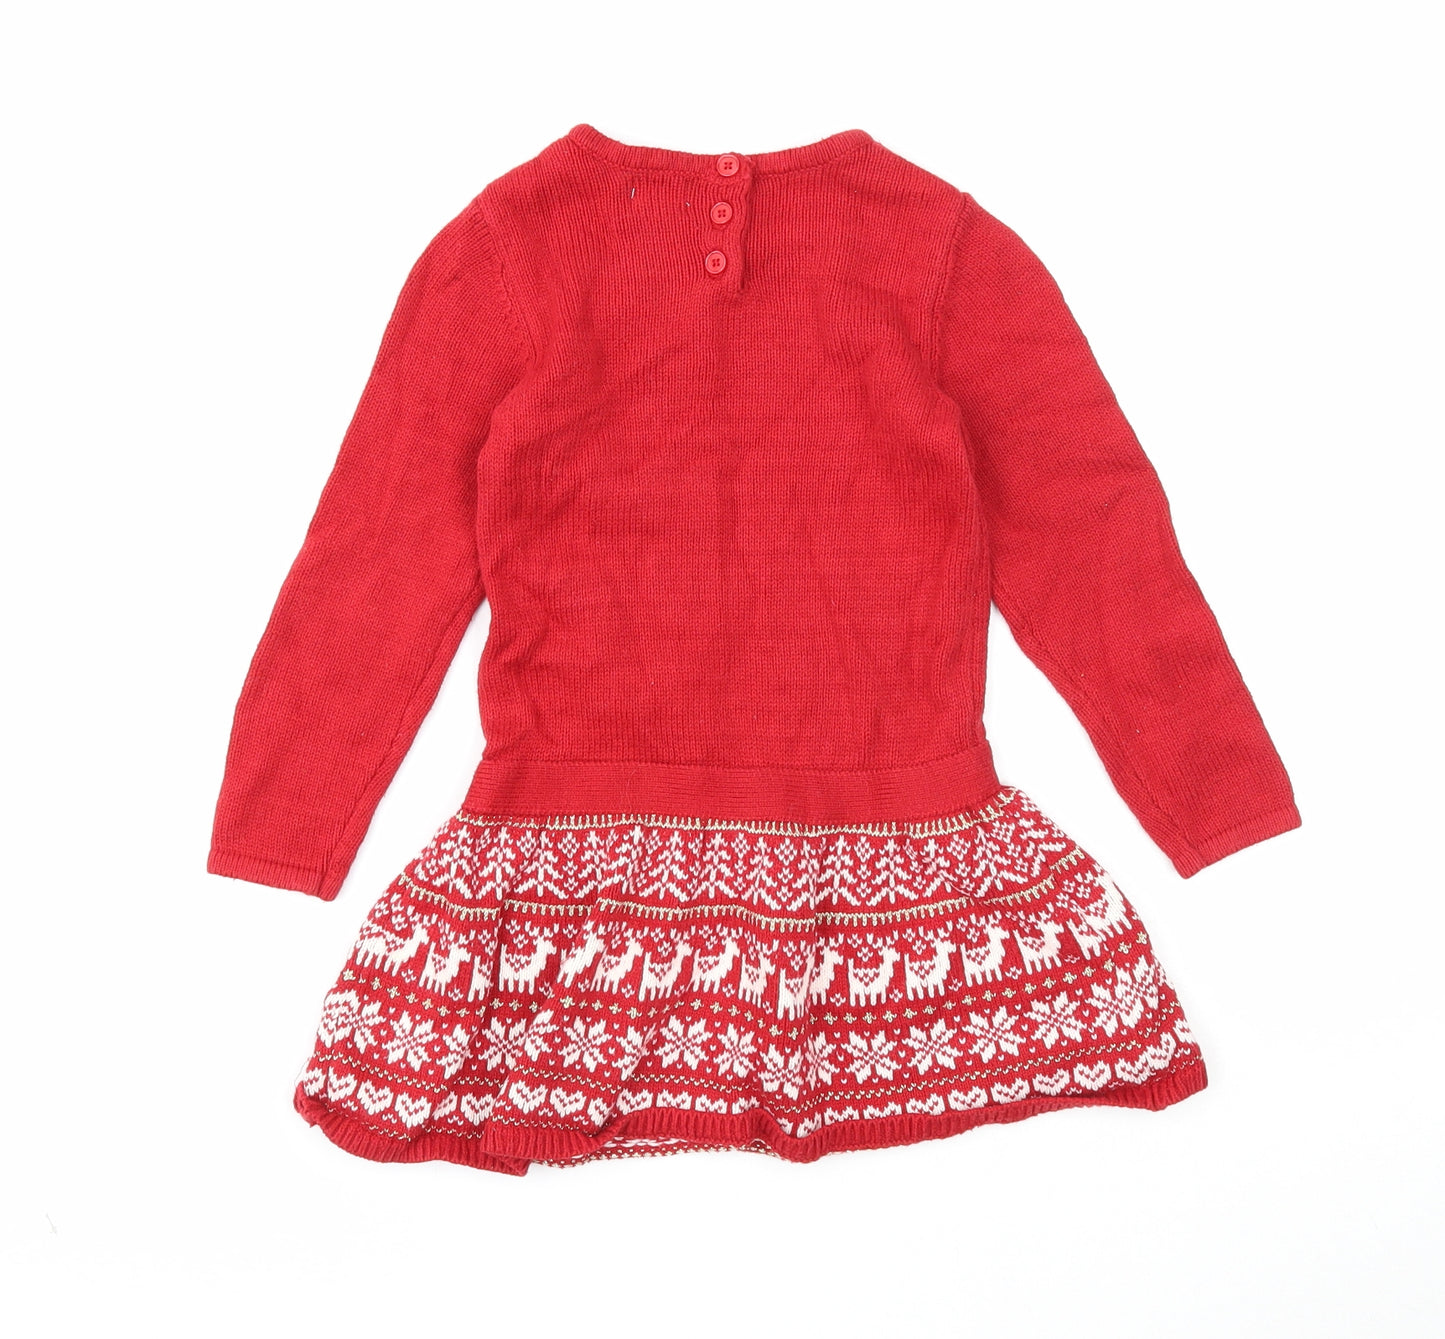 Preworn Girls Red Cotton Jumper Dress Size 2-3 Years Round Neck Button